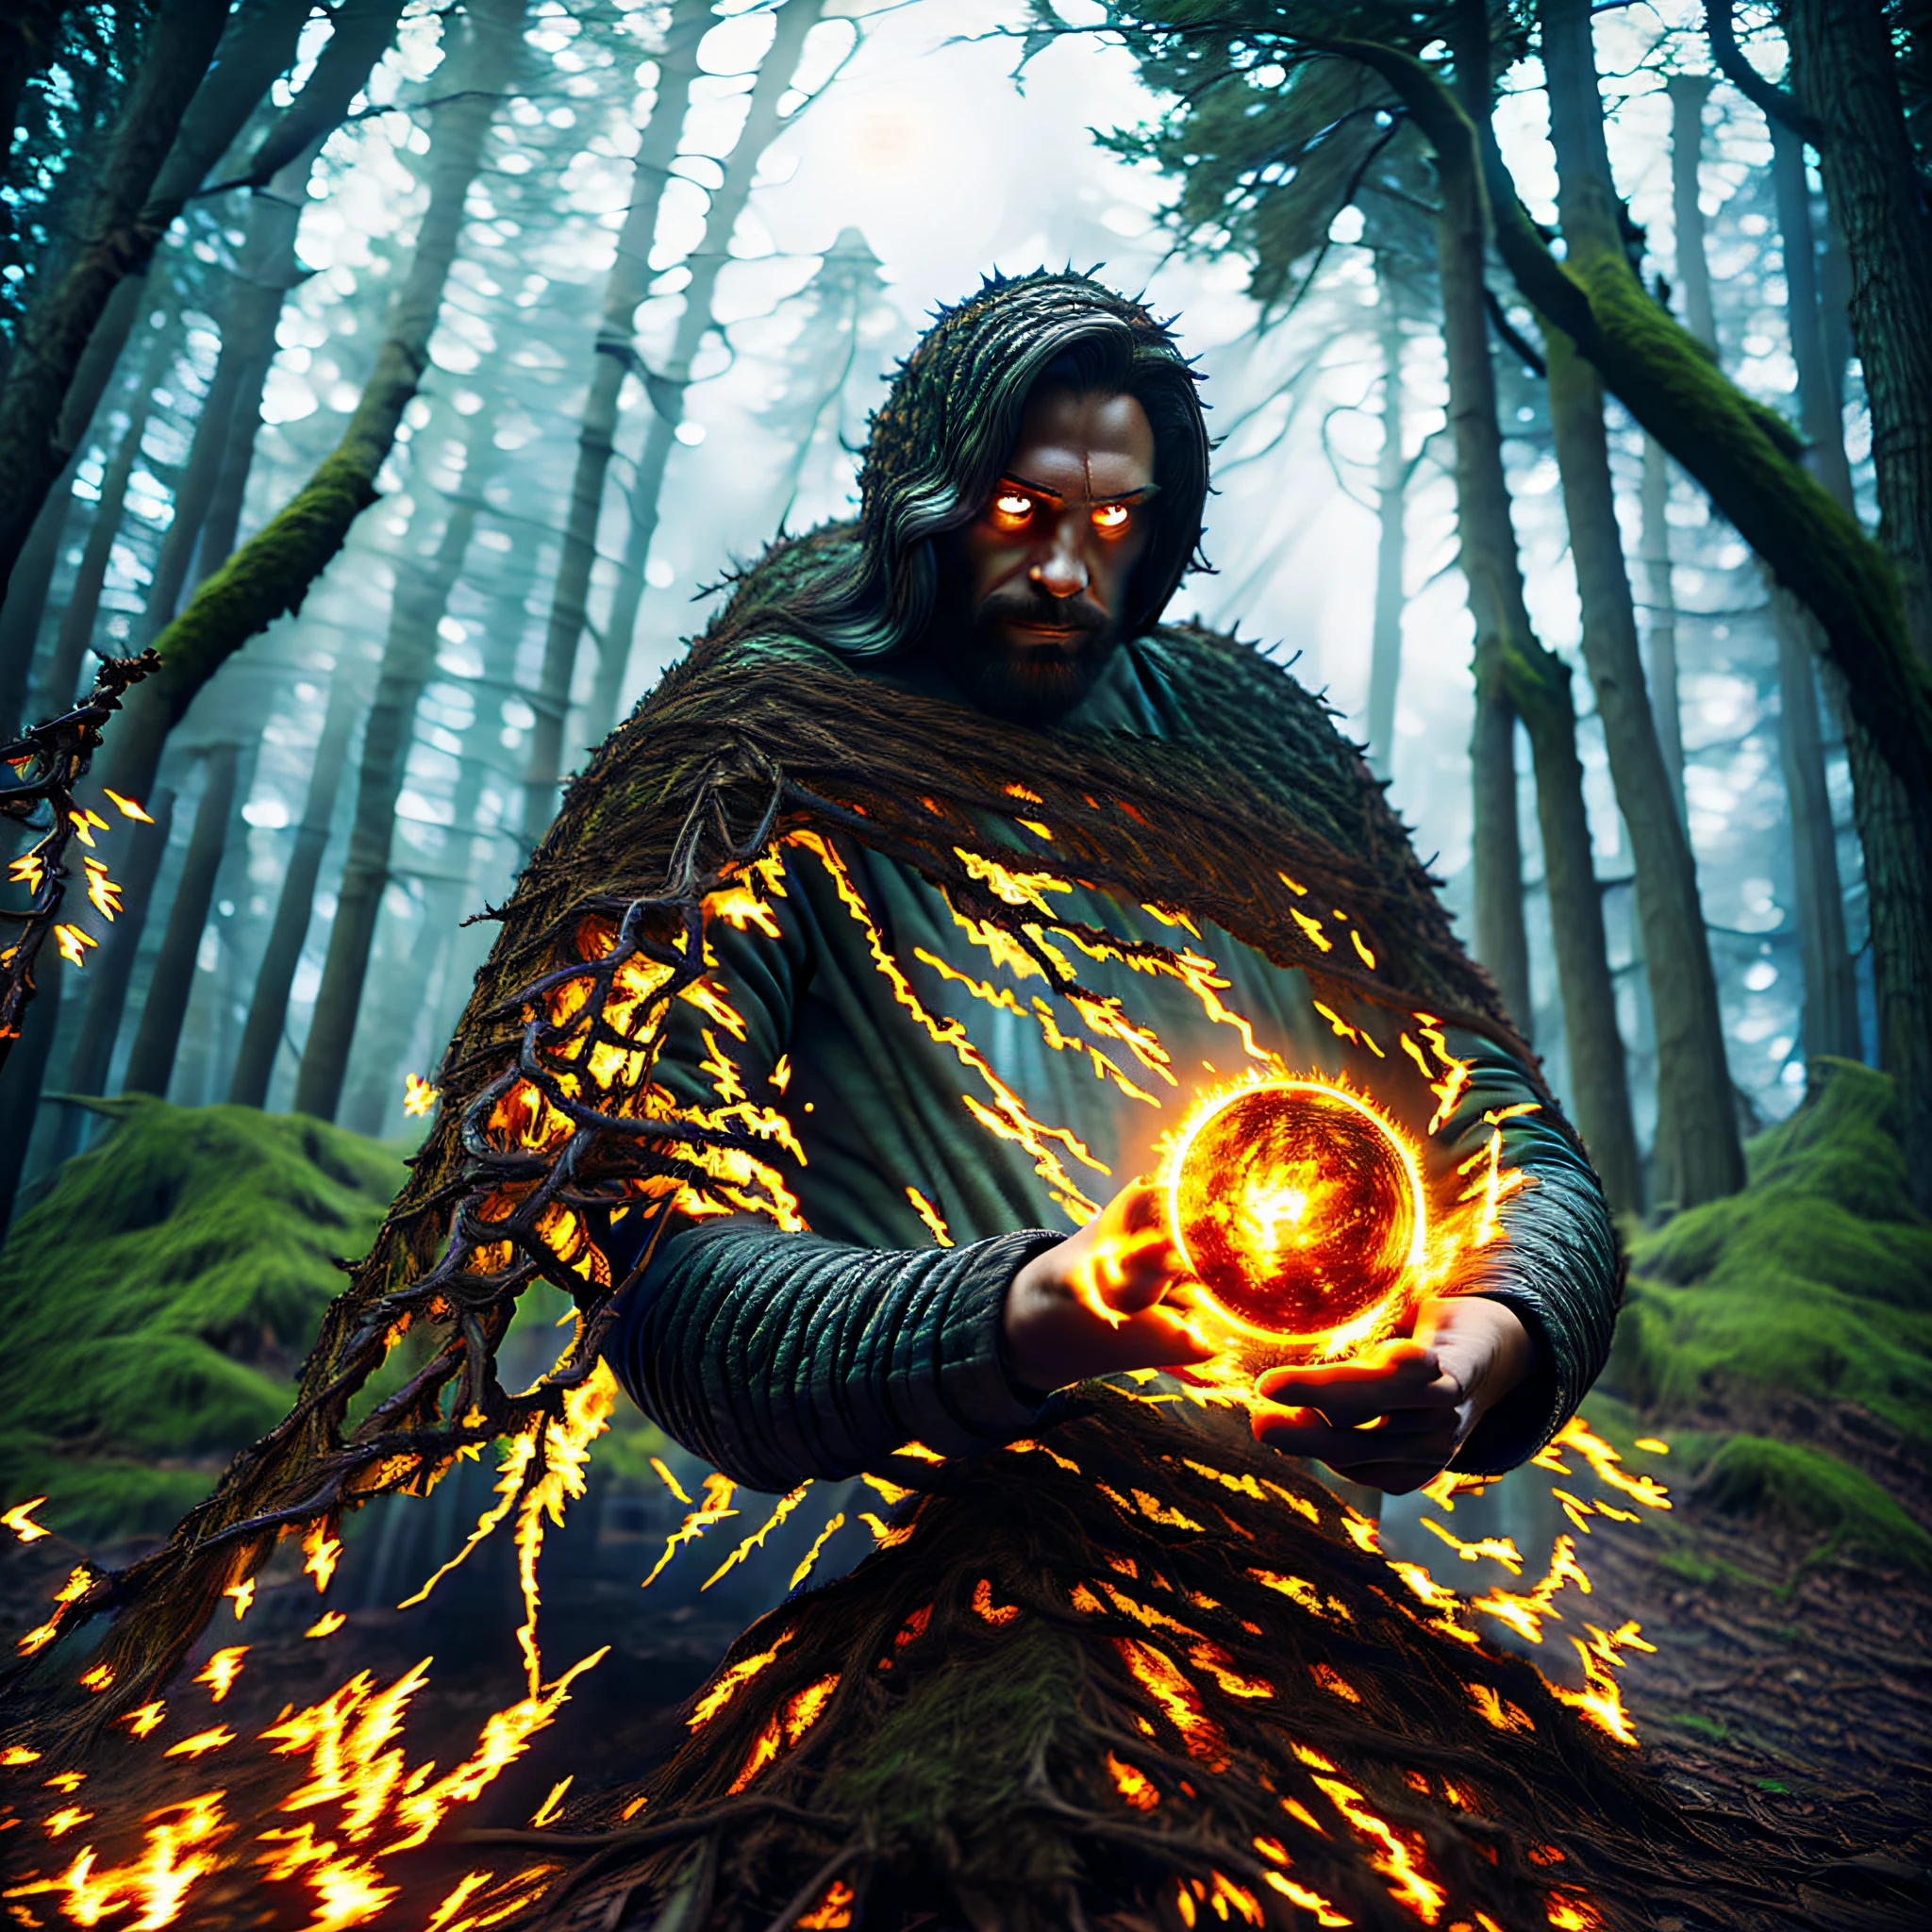 魔術師, 暗い森の中で, 月光, 手の中の火の玉, 5つの要素